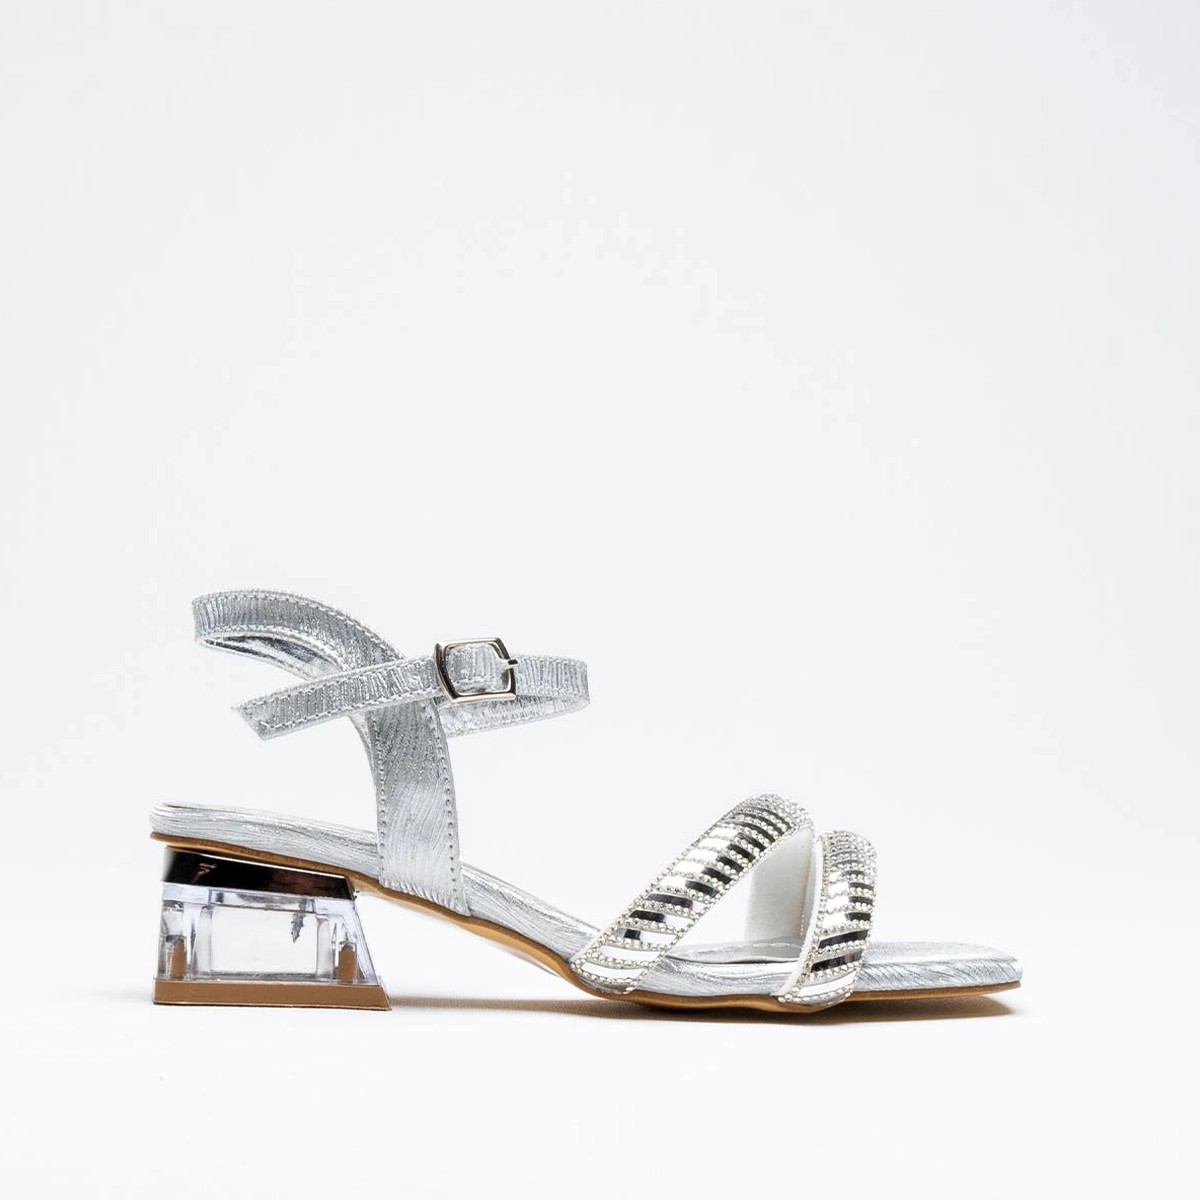 Tekstil Taşlı Kalın Kısa Topuklu Sandalet - Gümüş